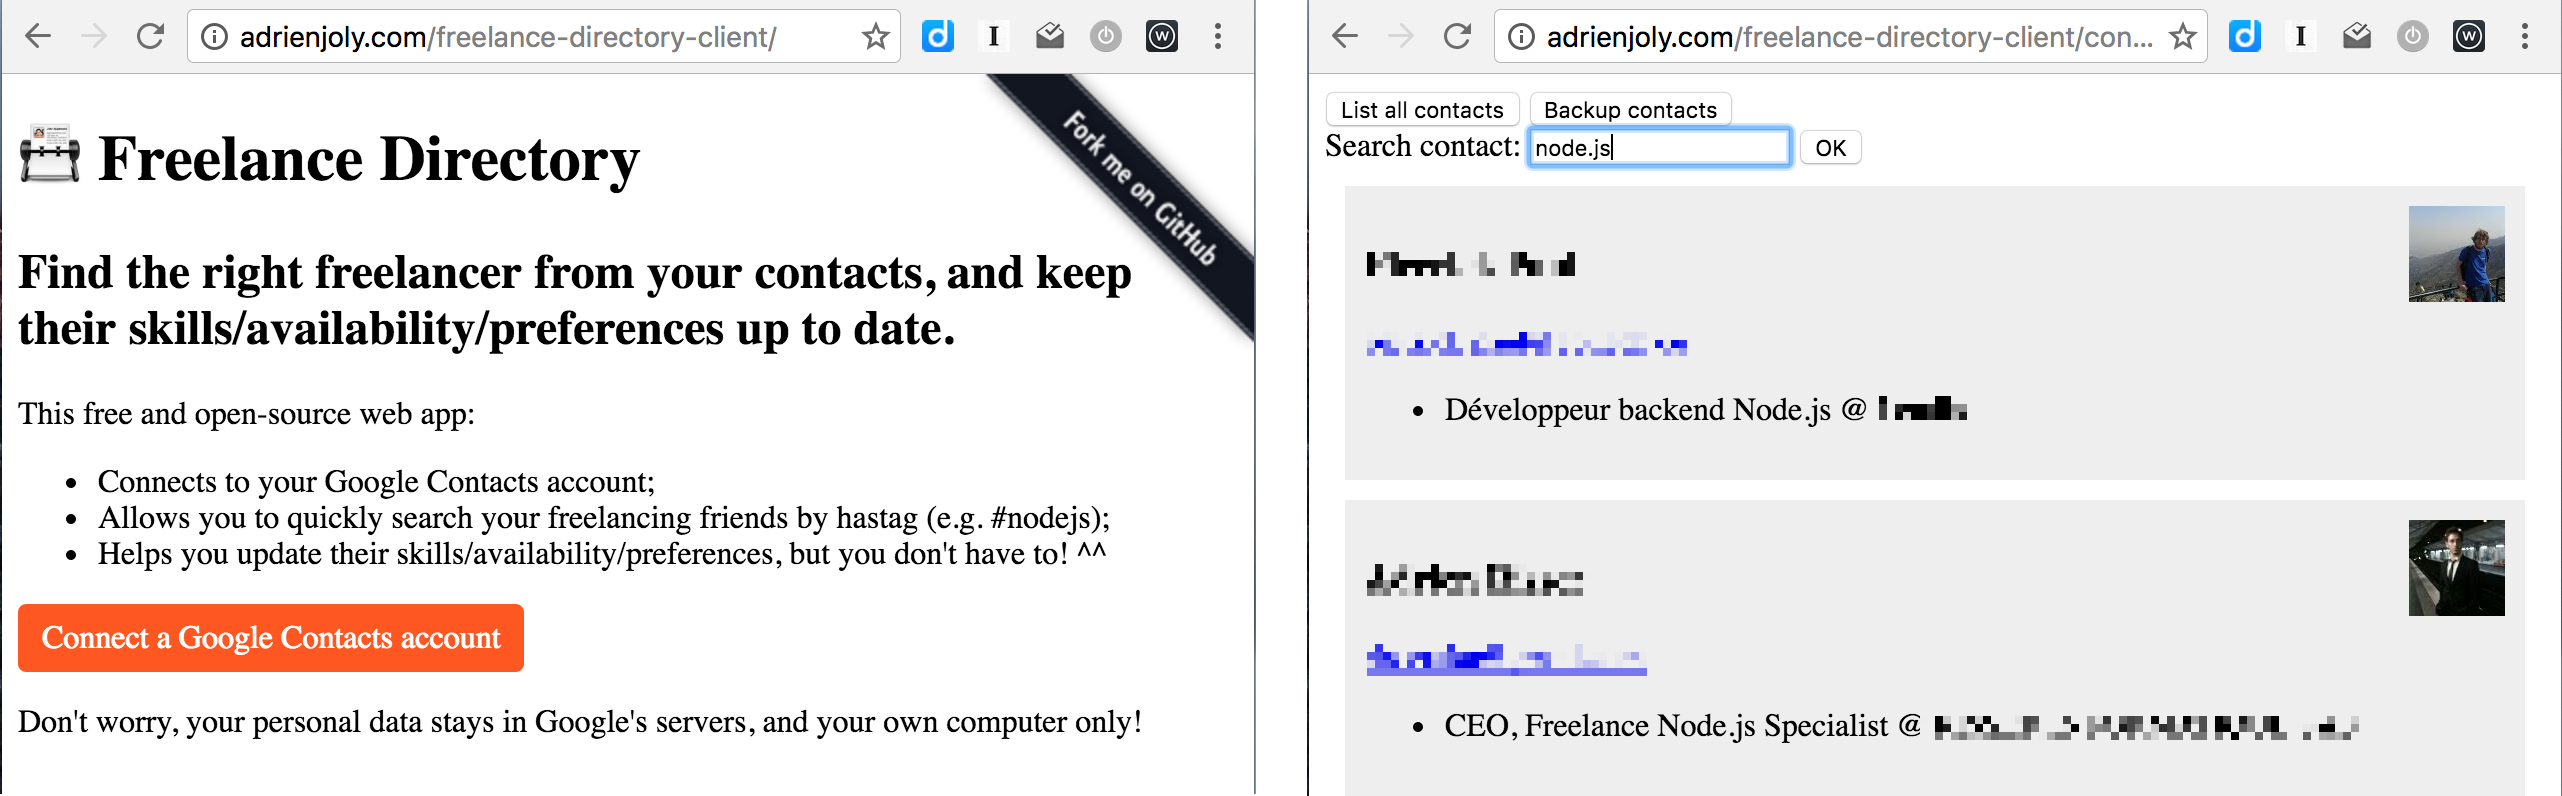 Freelance Directory Client Screenshot